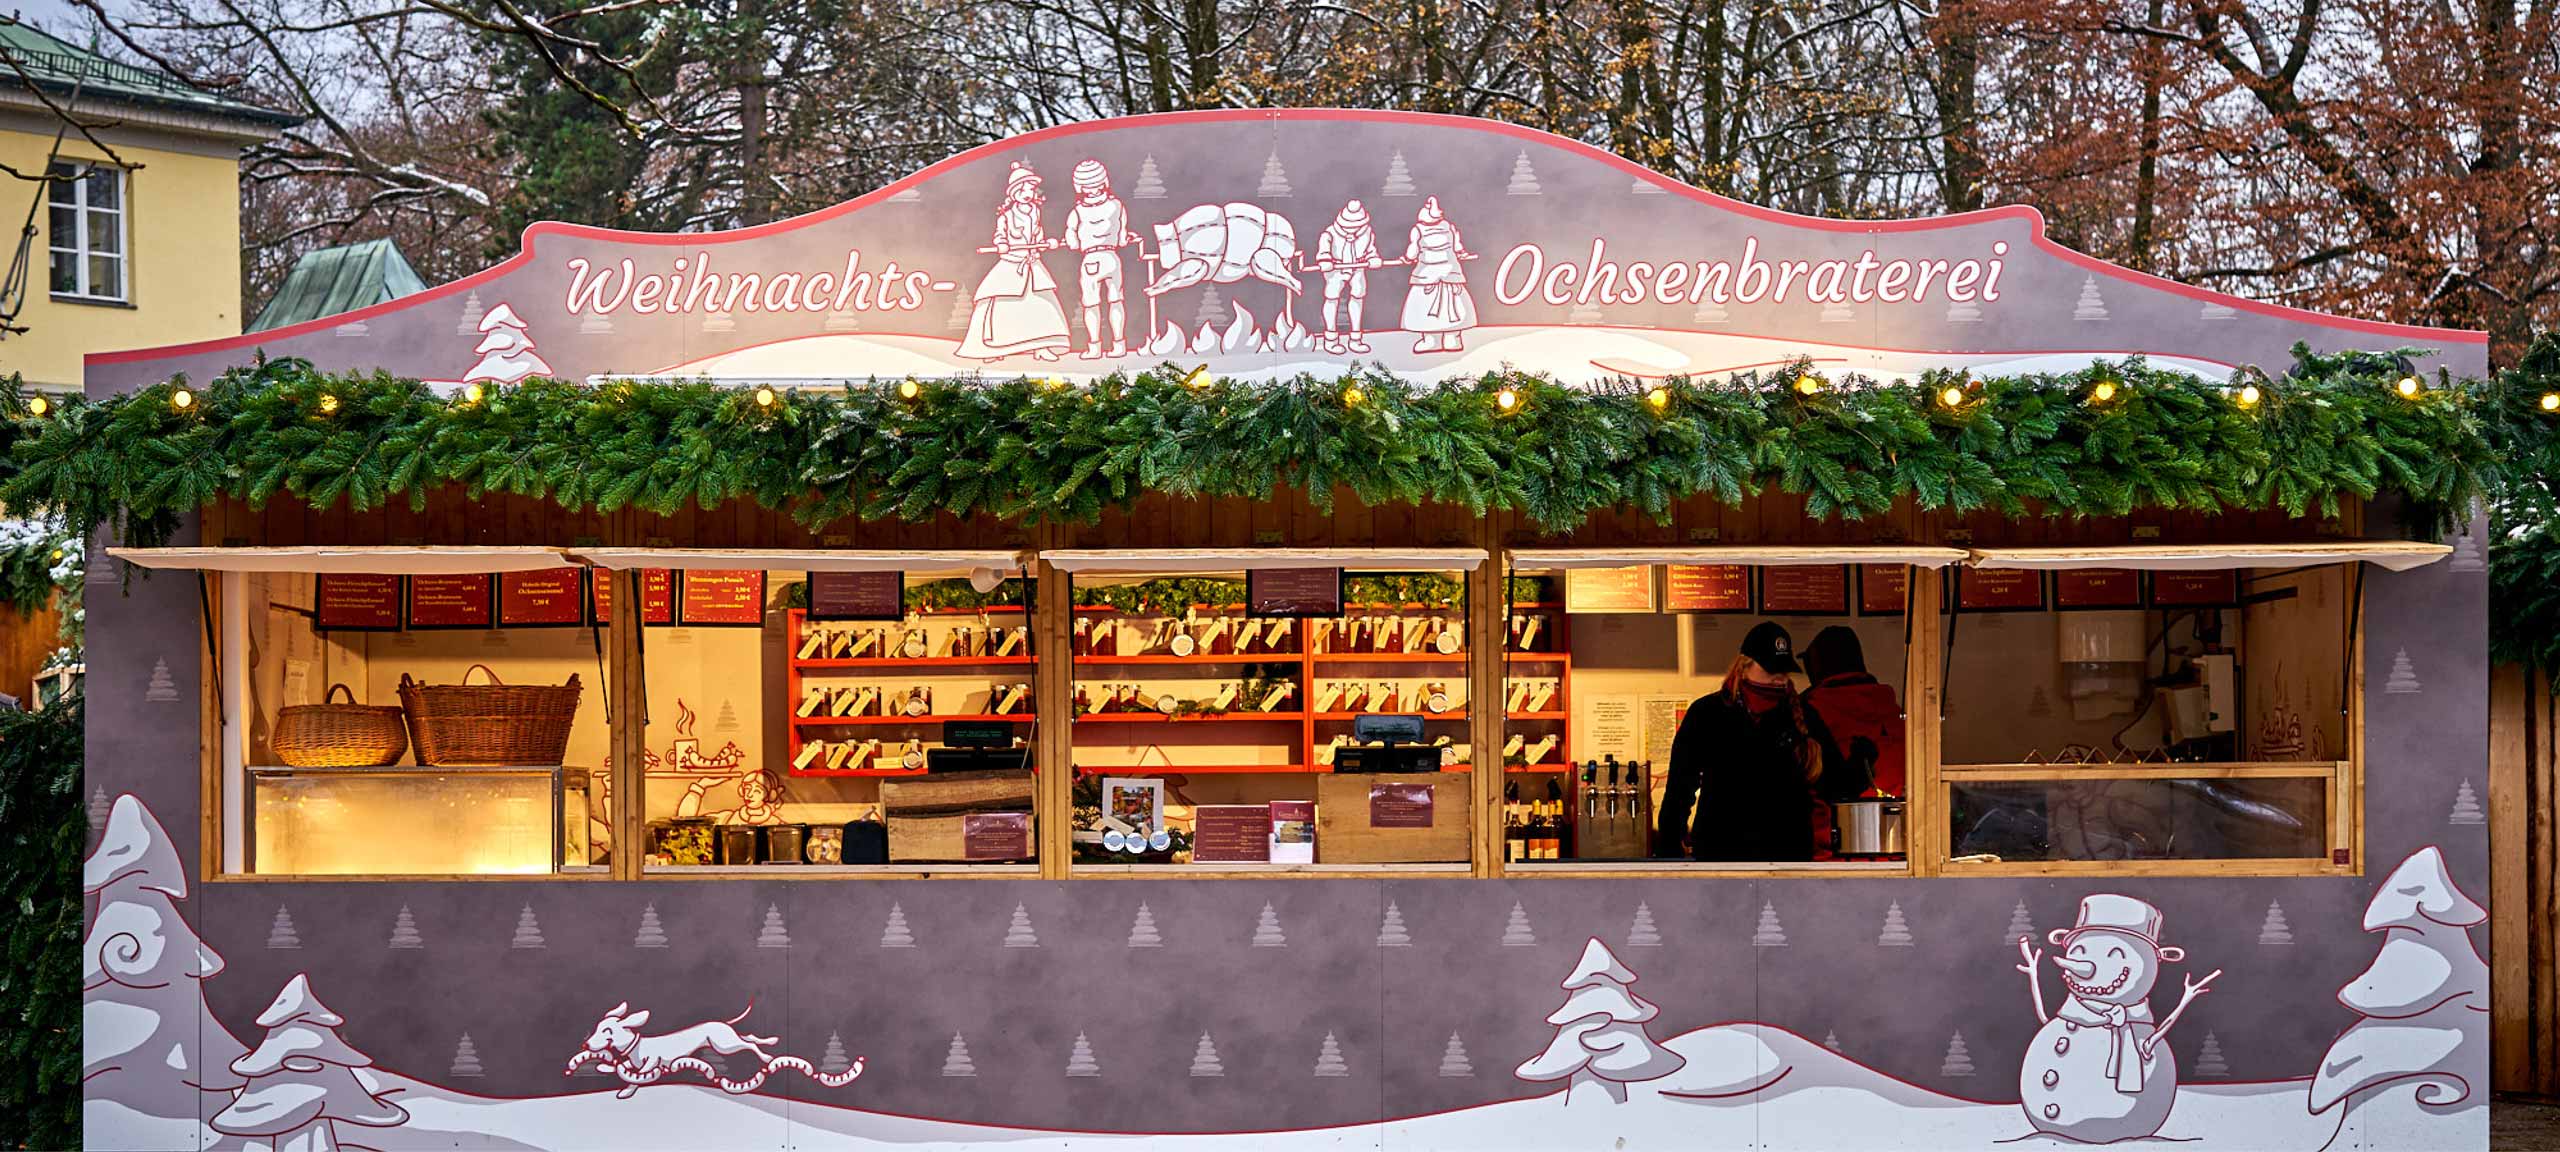 Der Header zeigt den Marktstand der Ochsenbraterei auf einem Weihnachtsmarkt in München. Das Stand Design ziert eine Illustrierte Schneelandschaft mit vielen Details im Stil des Ochsenbraterei Corporate Design.